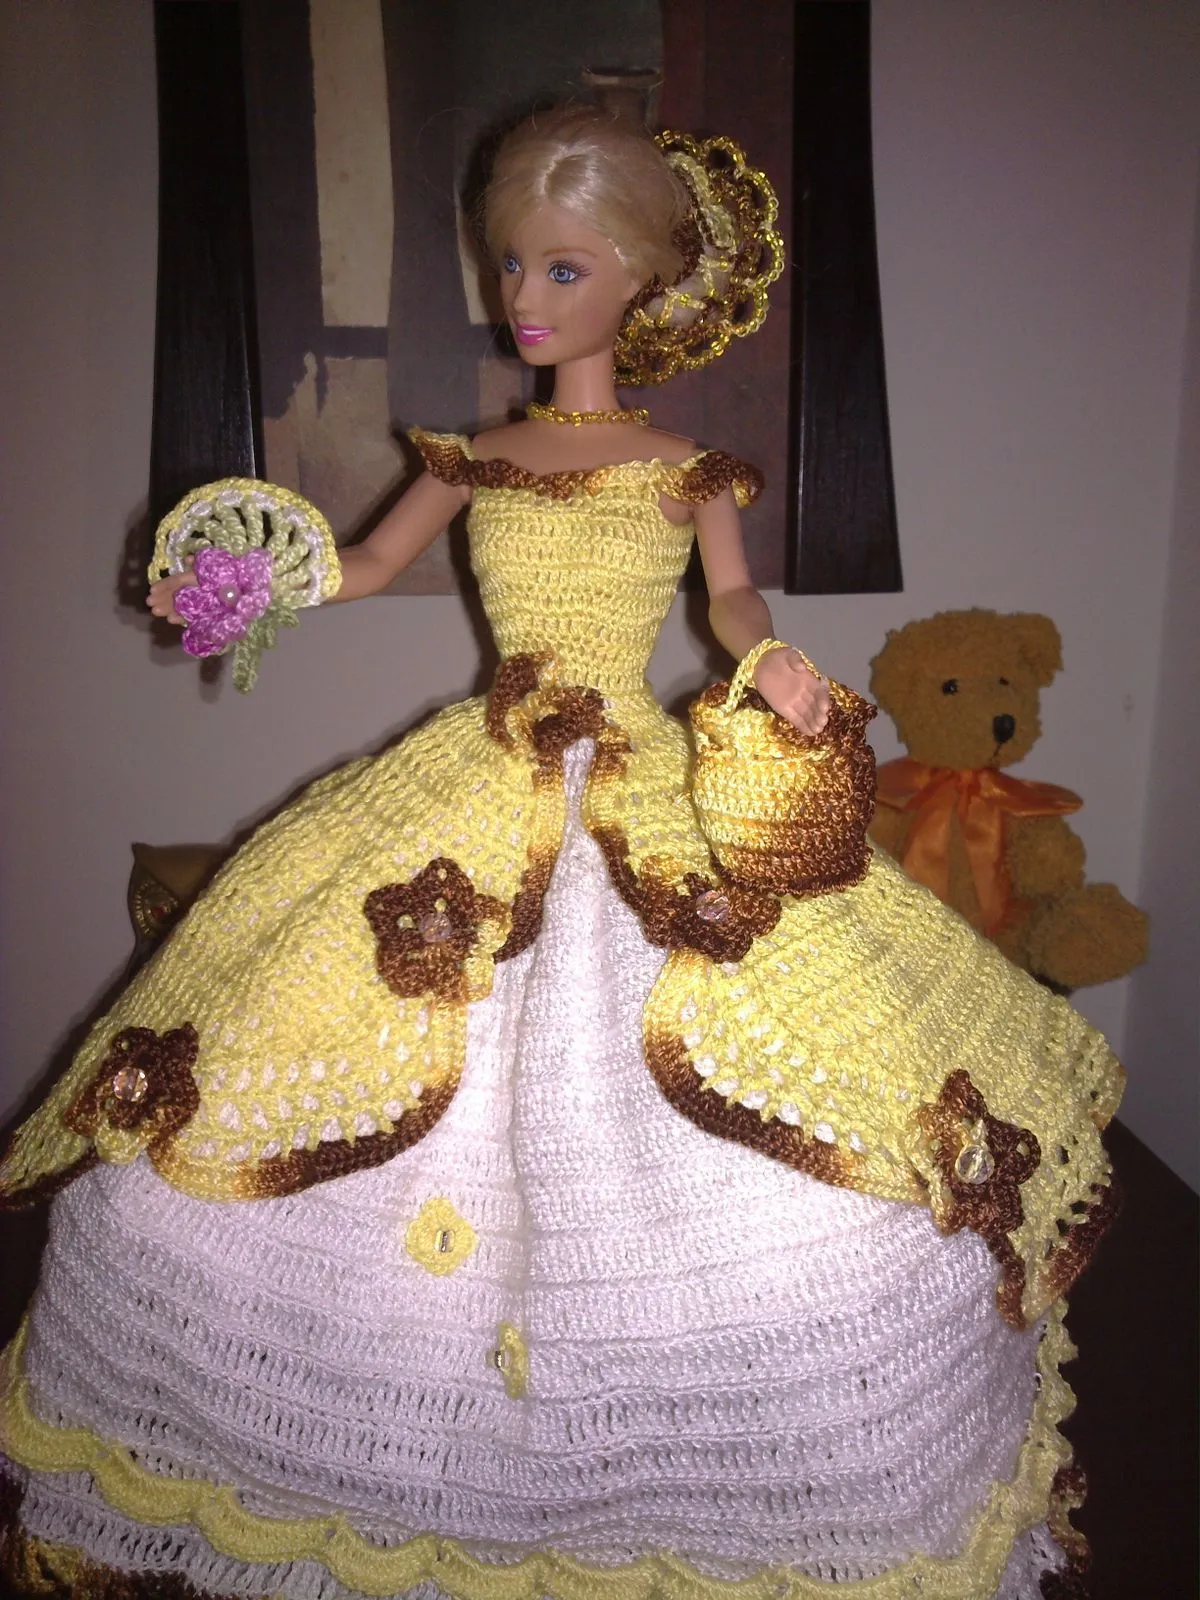 Vestidos para muñecas en crochet - Imagui